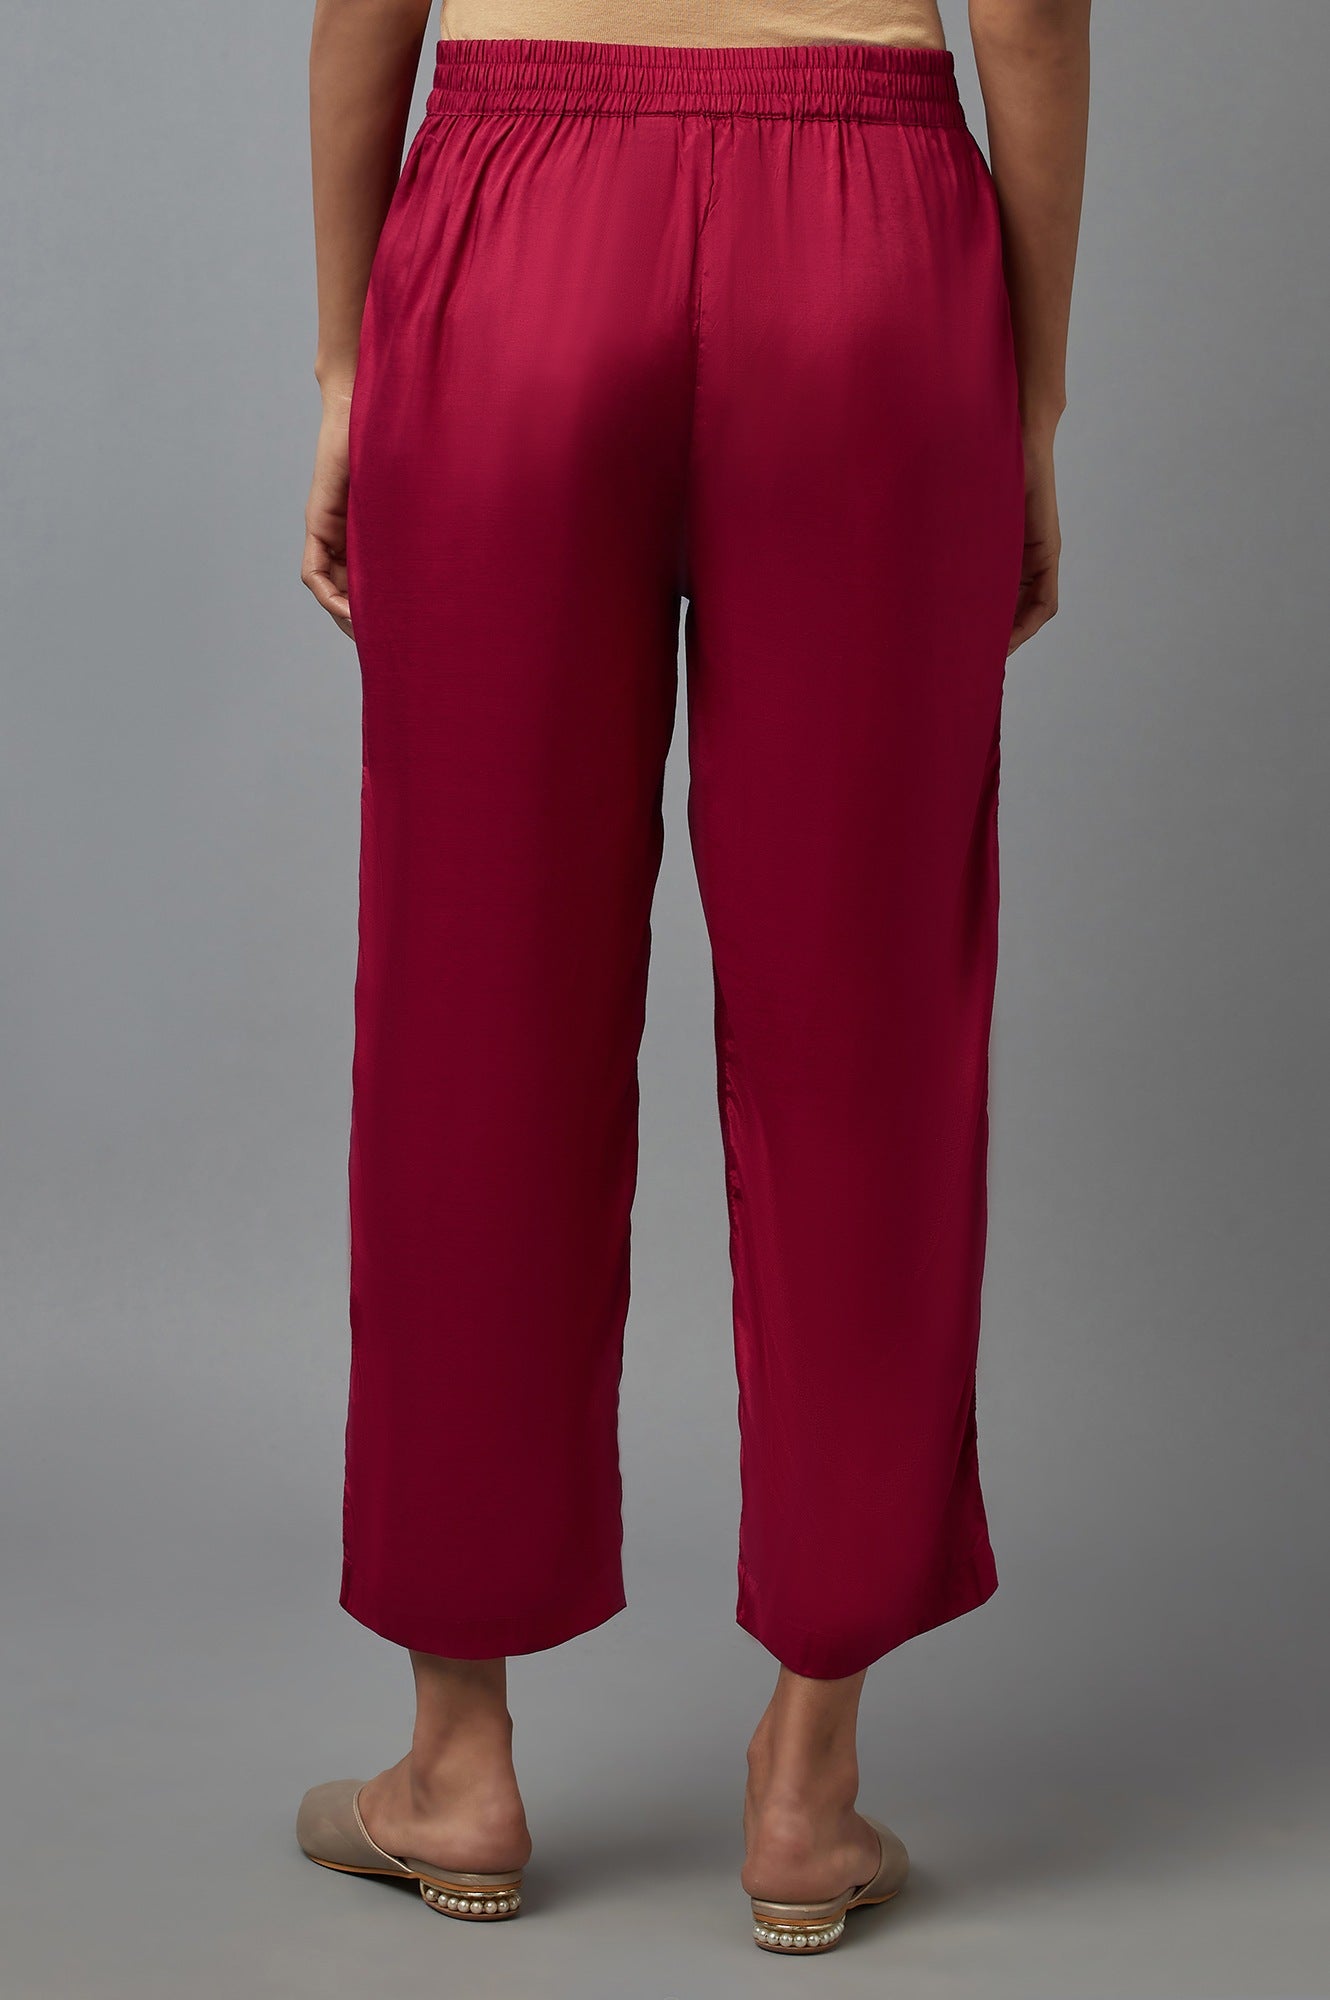 Dark Pink Solid Slim Pants in Straight Silhouette